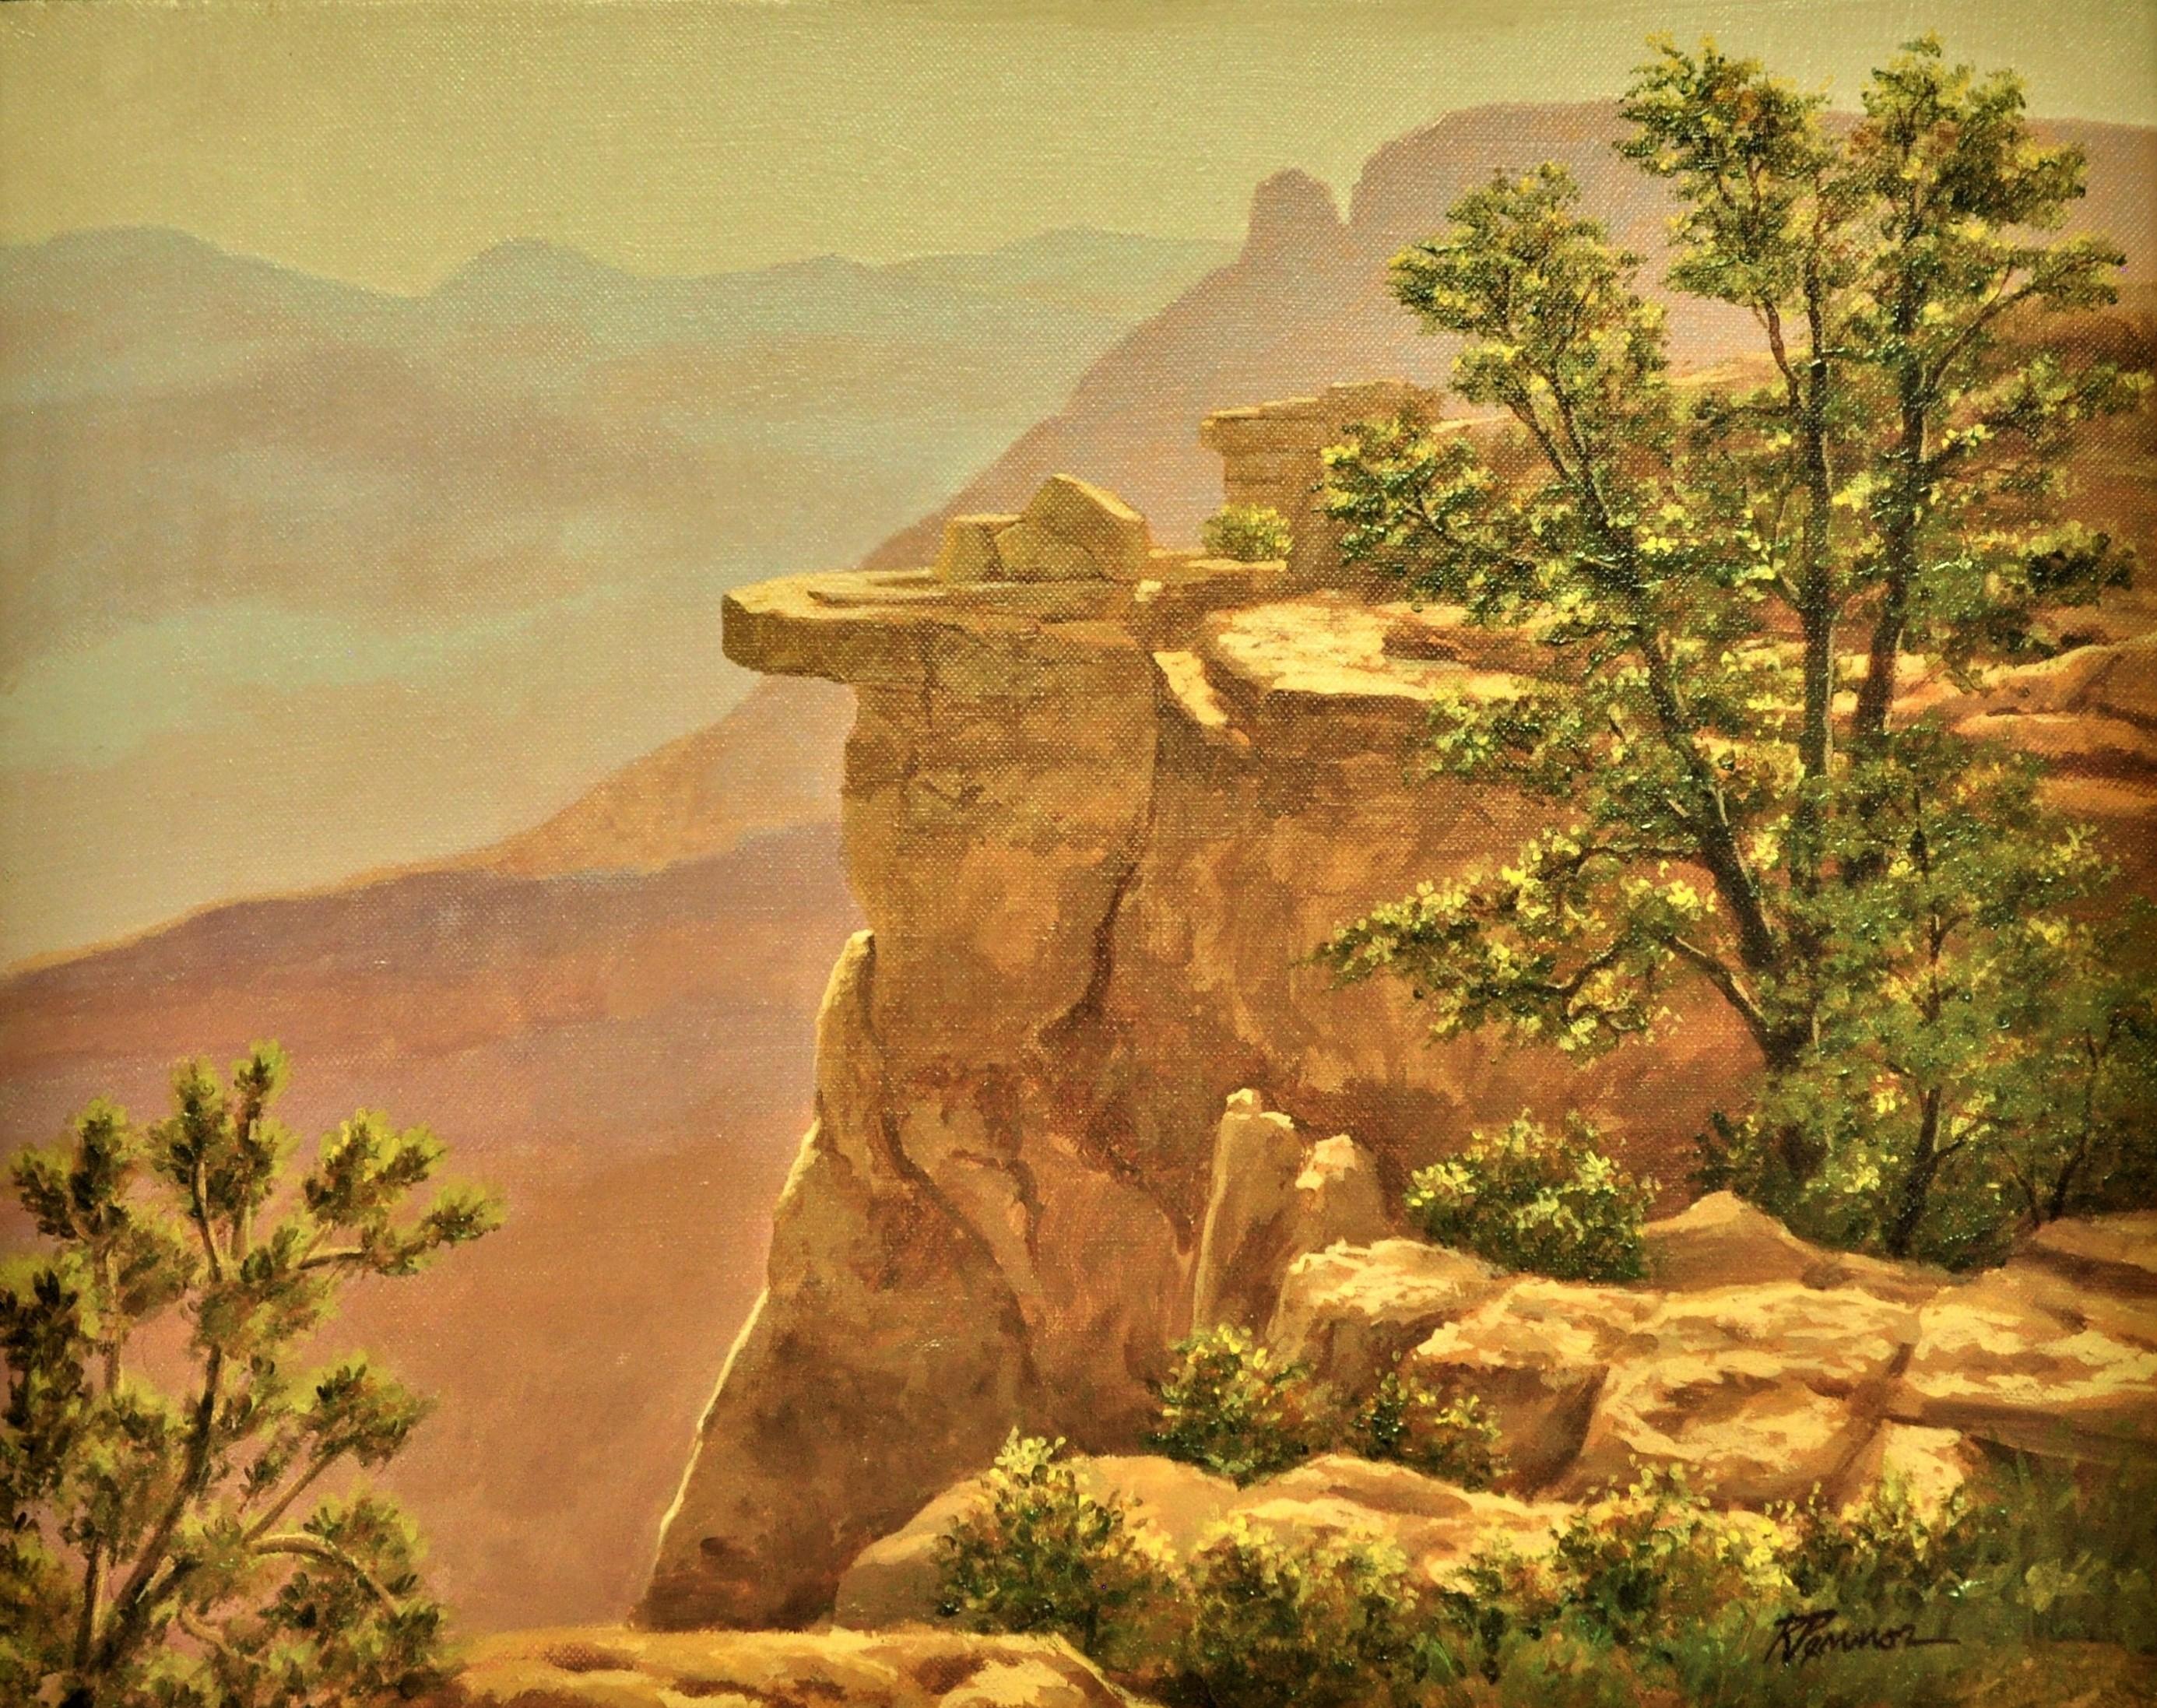 South Rim View, Grand Canyon